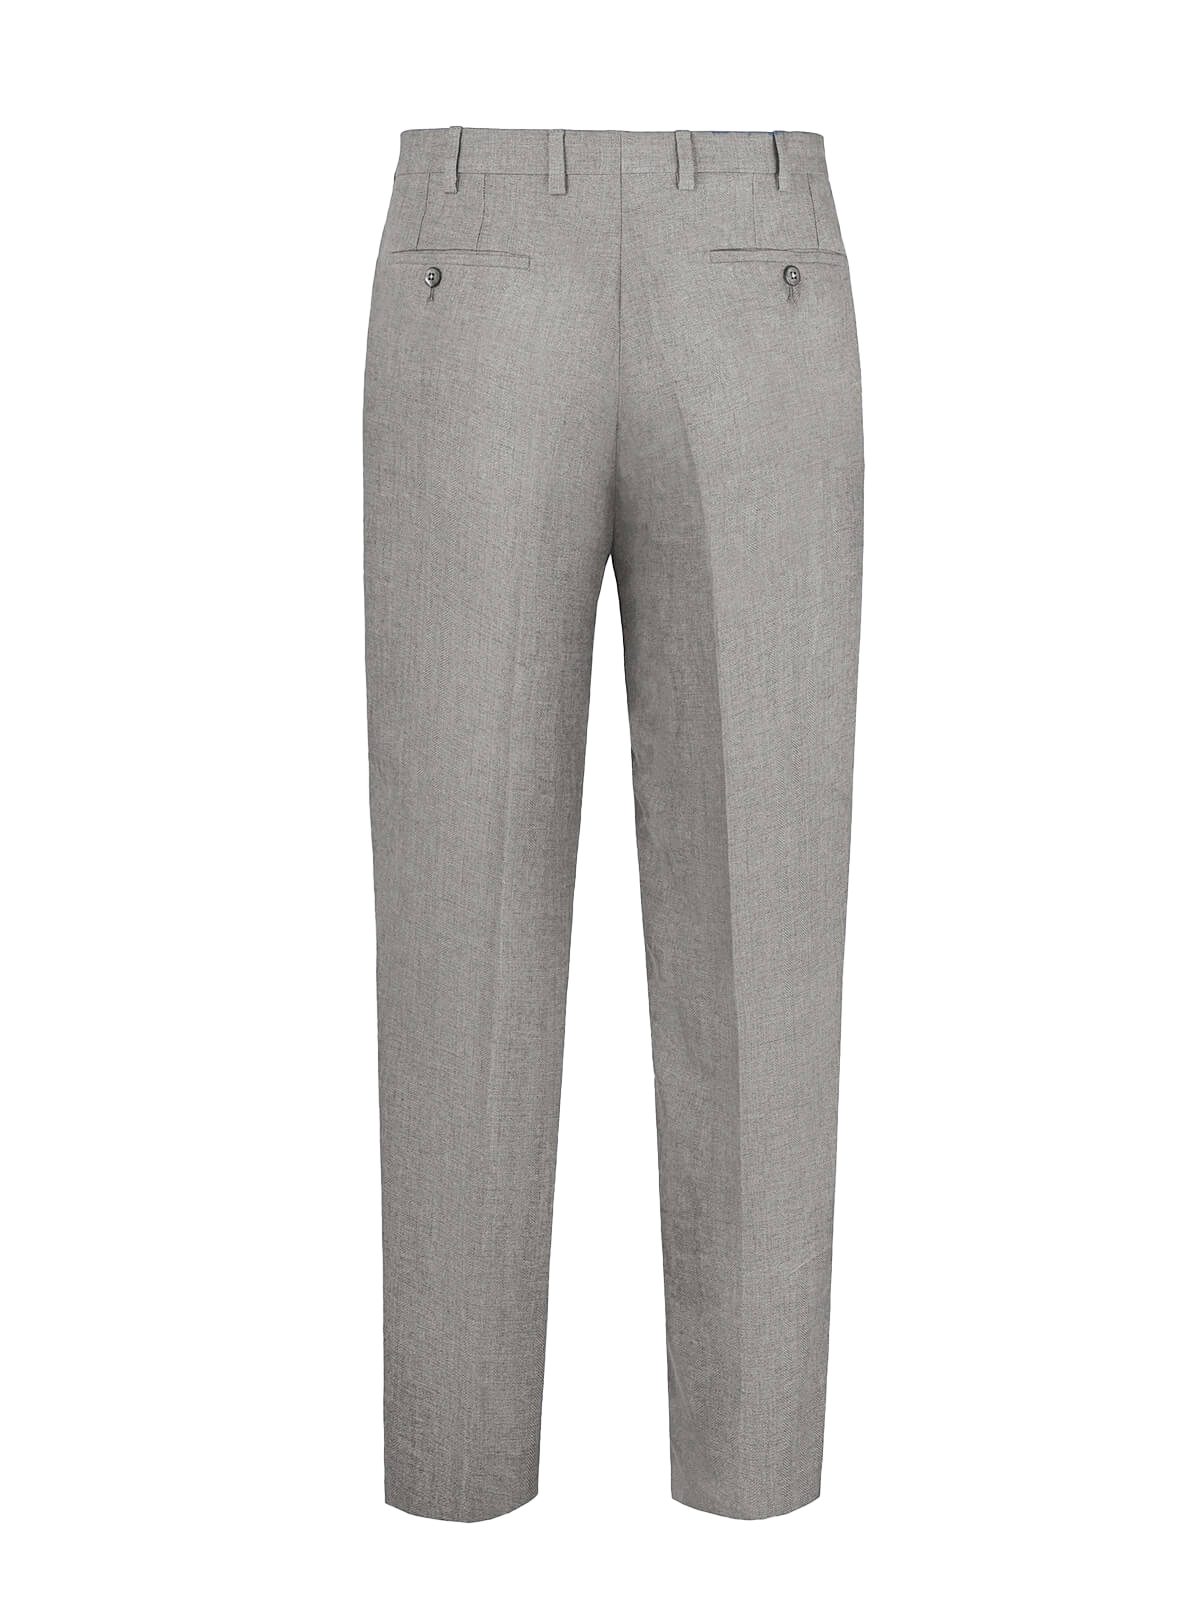 Pantalone Brezza 100% capri for man linen nut trouser back